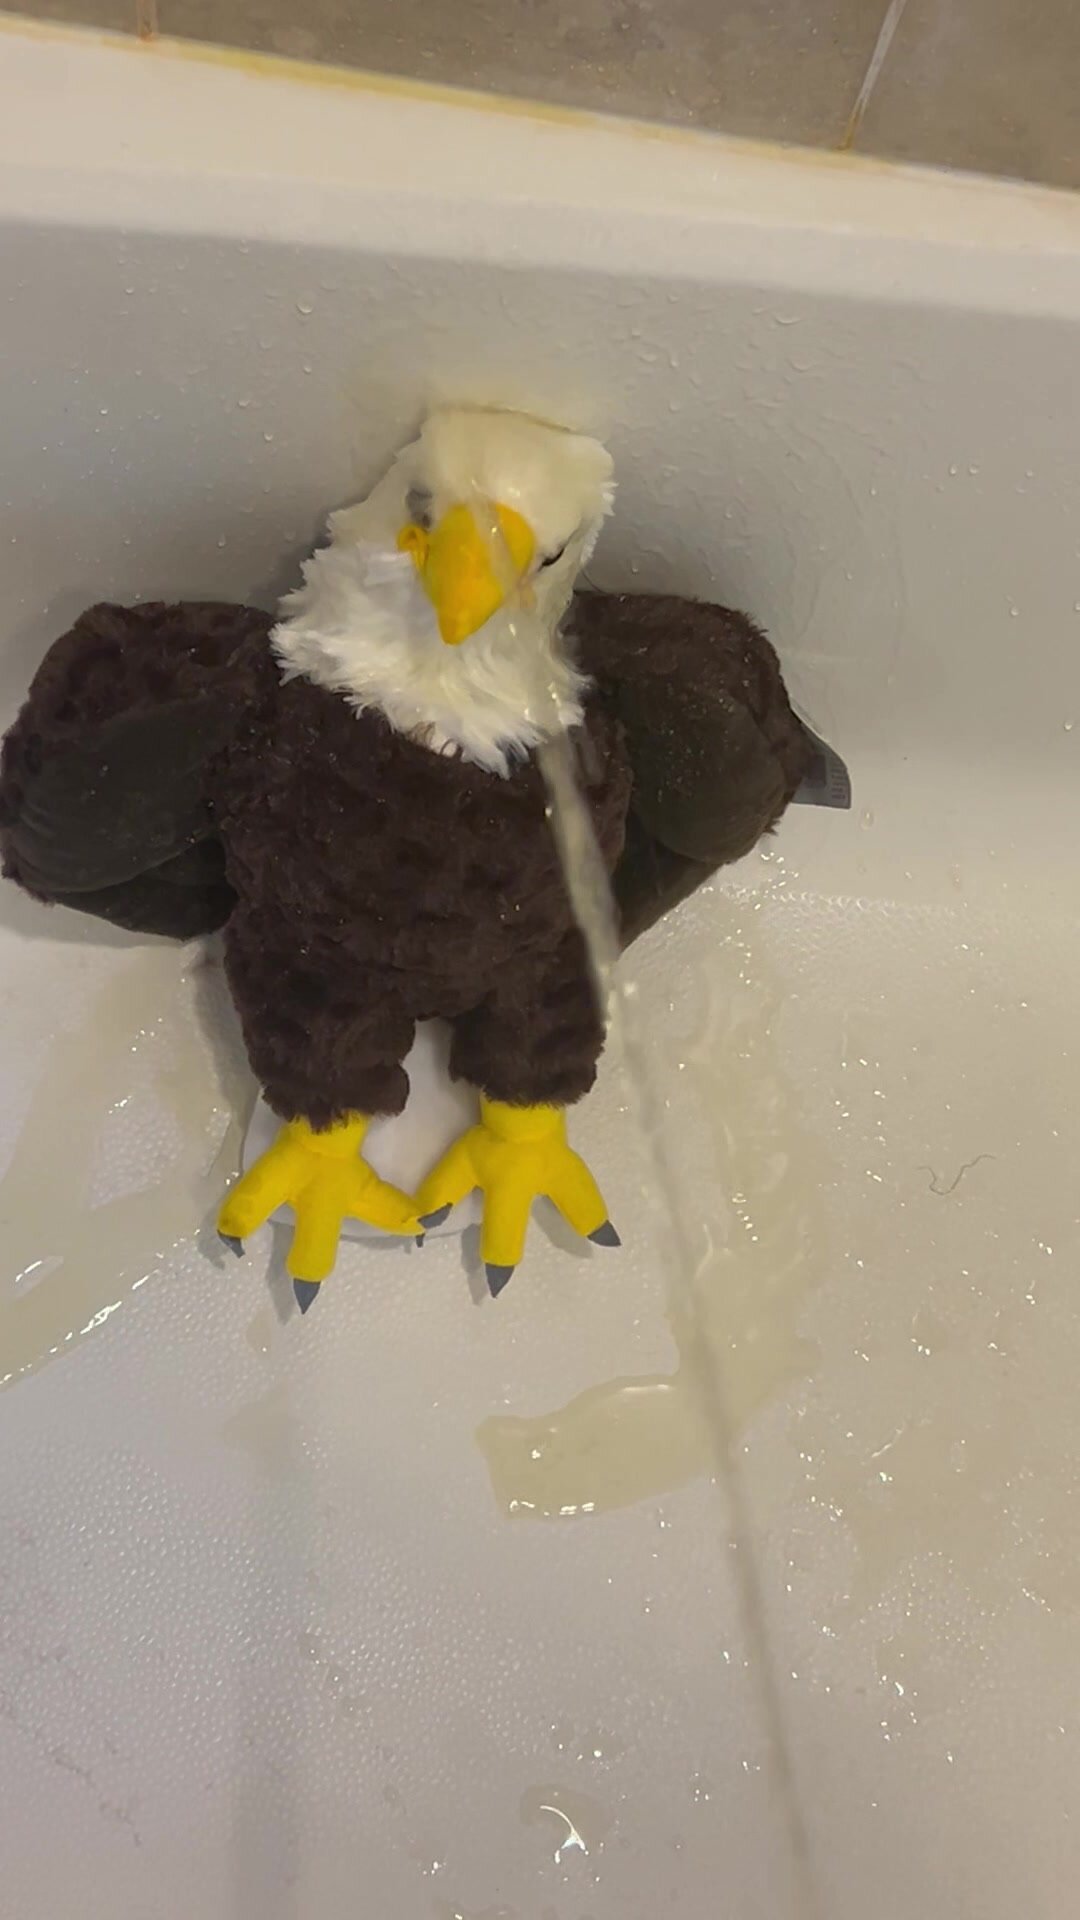 Giving An Eagle a Golden Bath